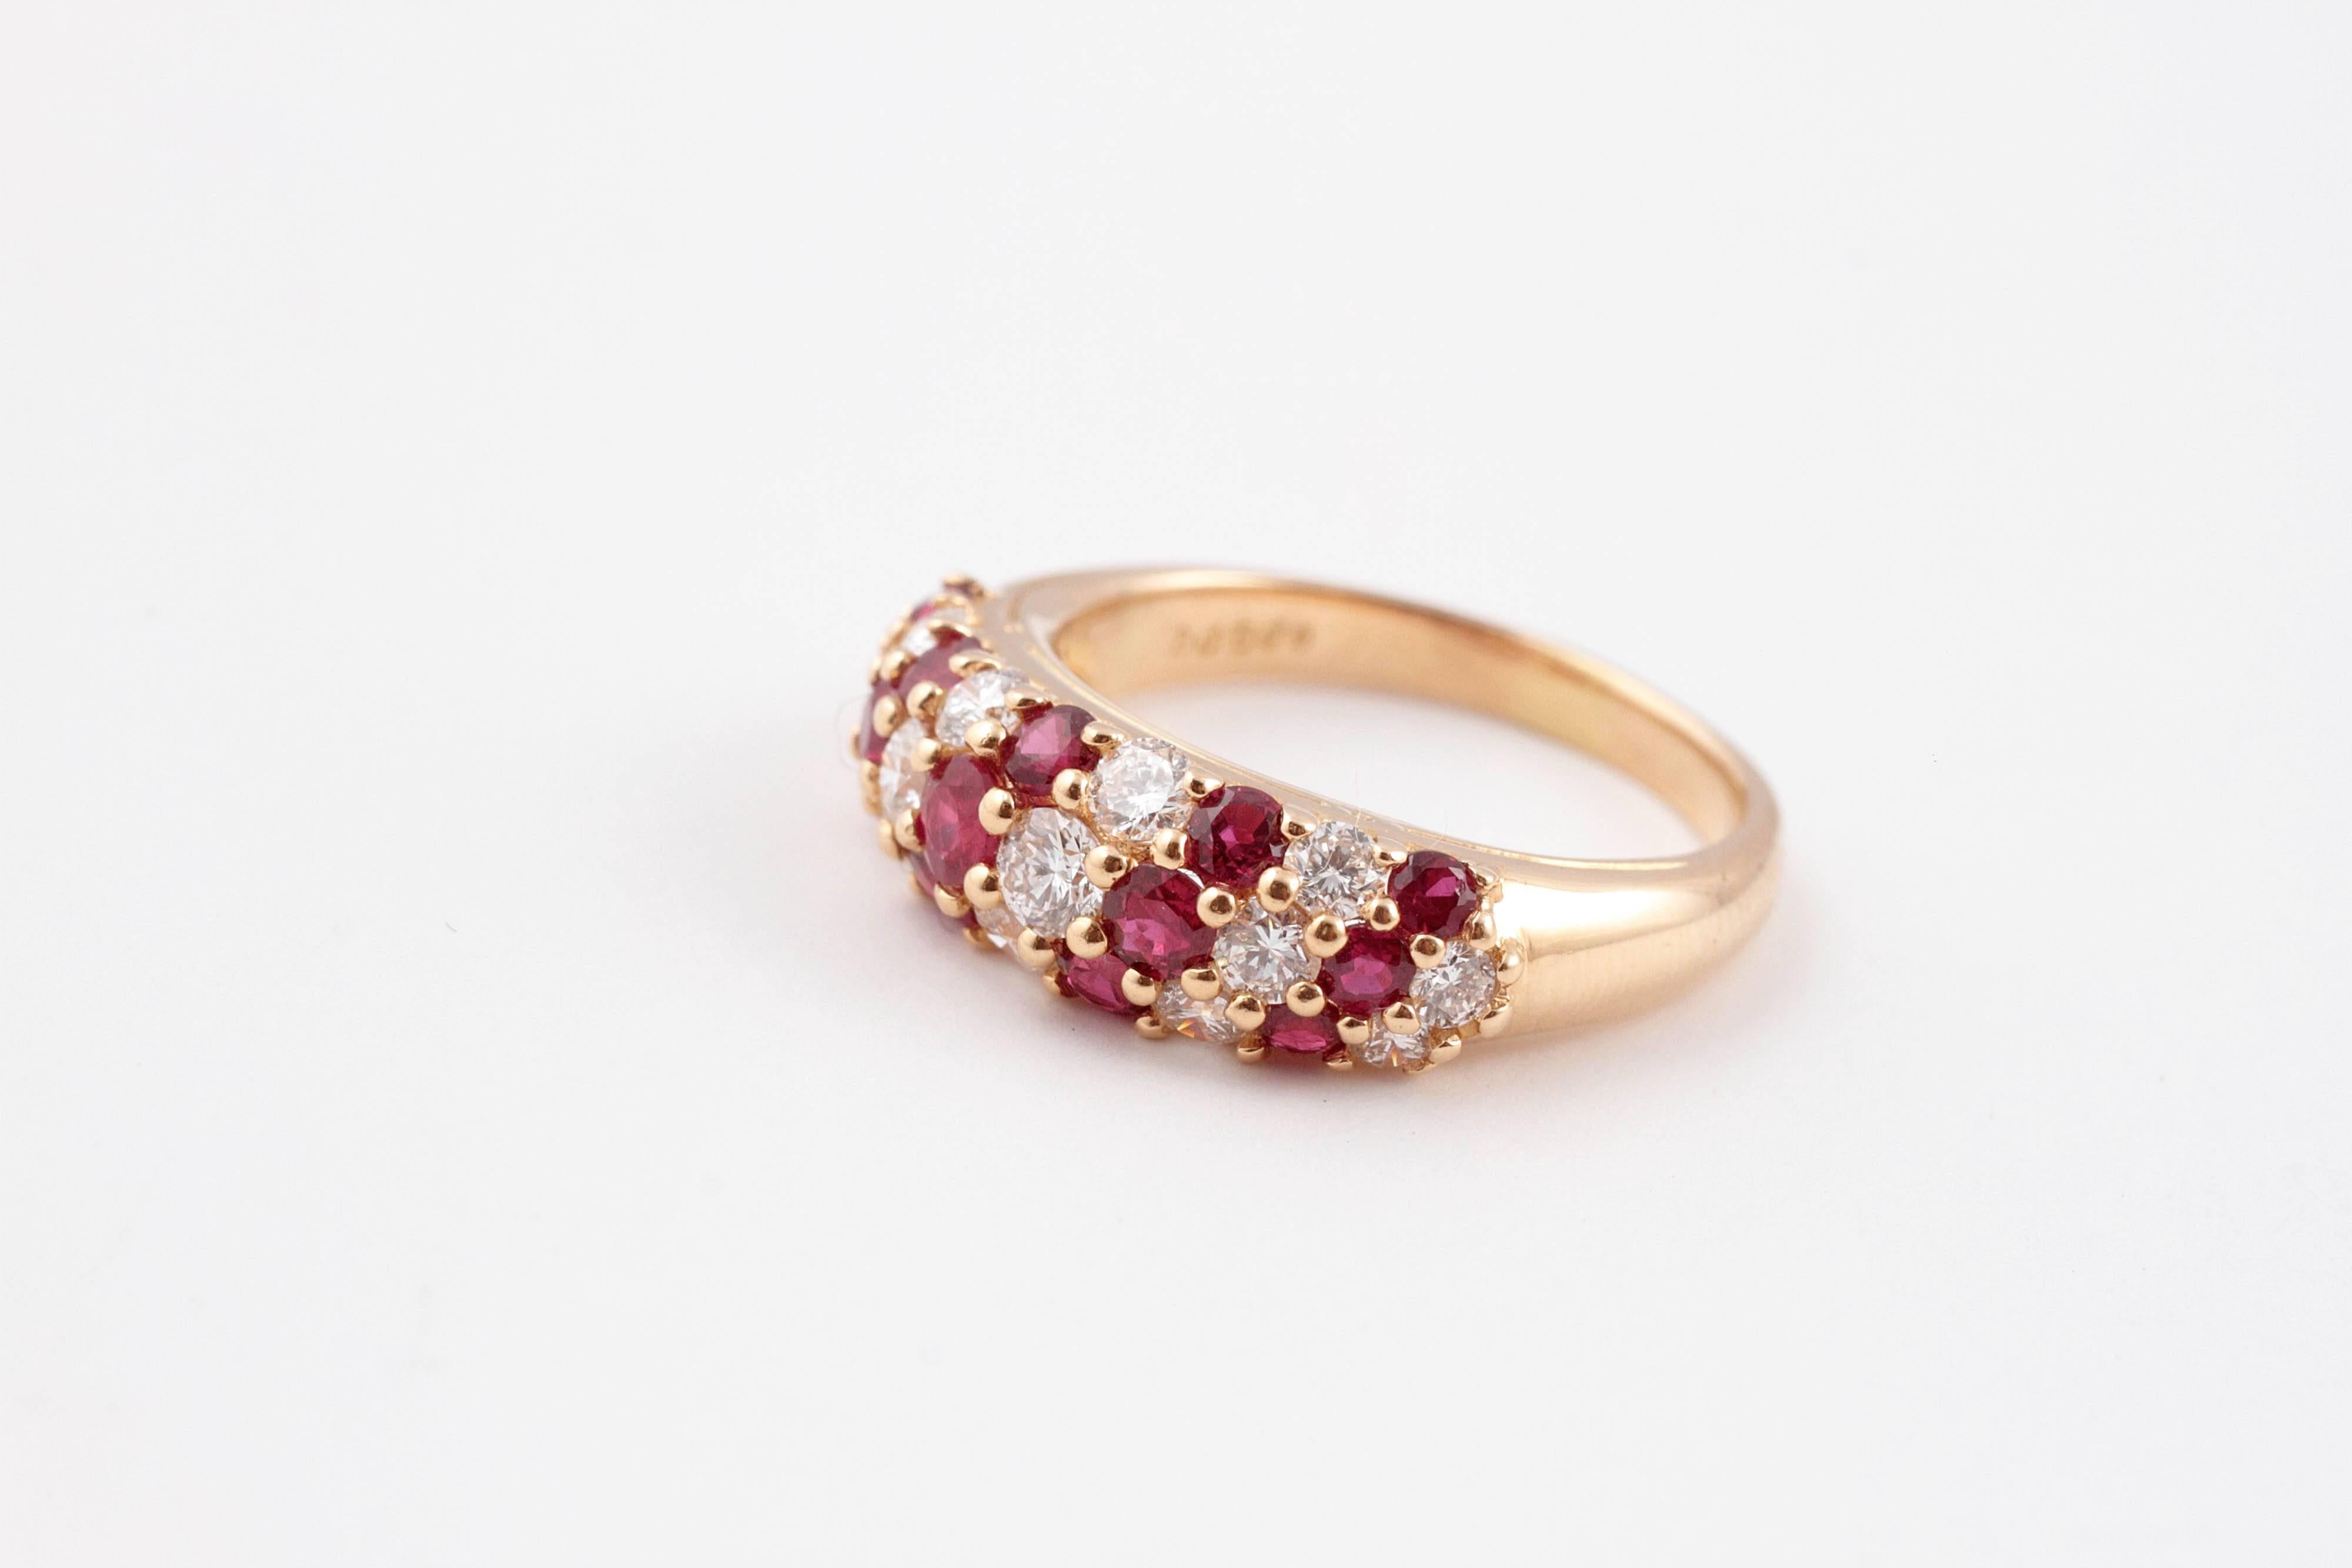 Magnifique bague en rubis et diamants du designer Oscar Heyman, en or jaune 18 carats. Taille 7 1/4.